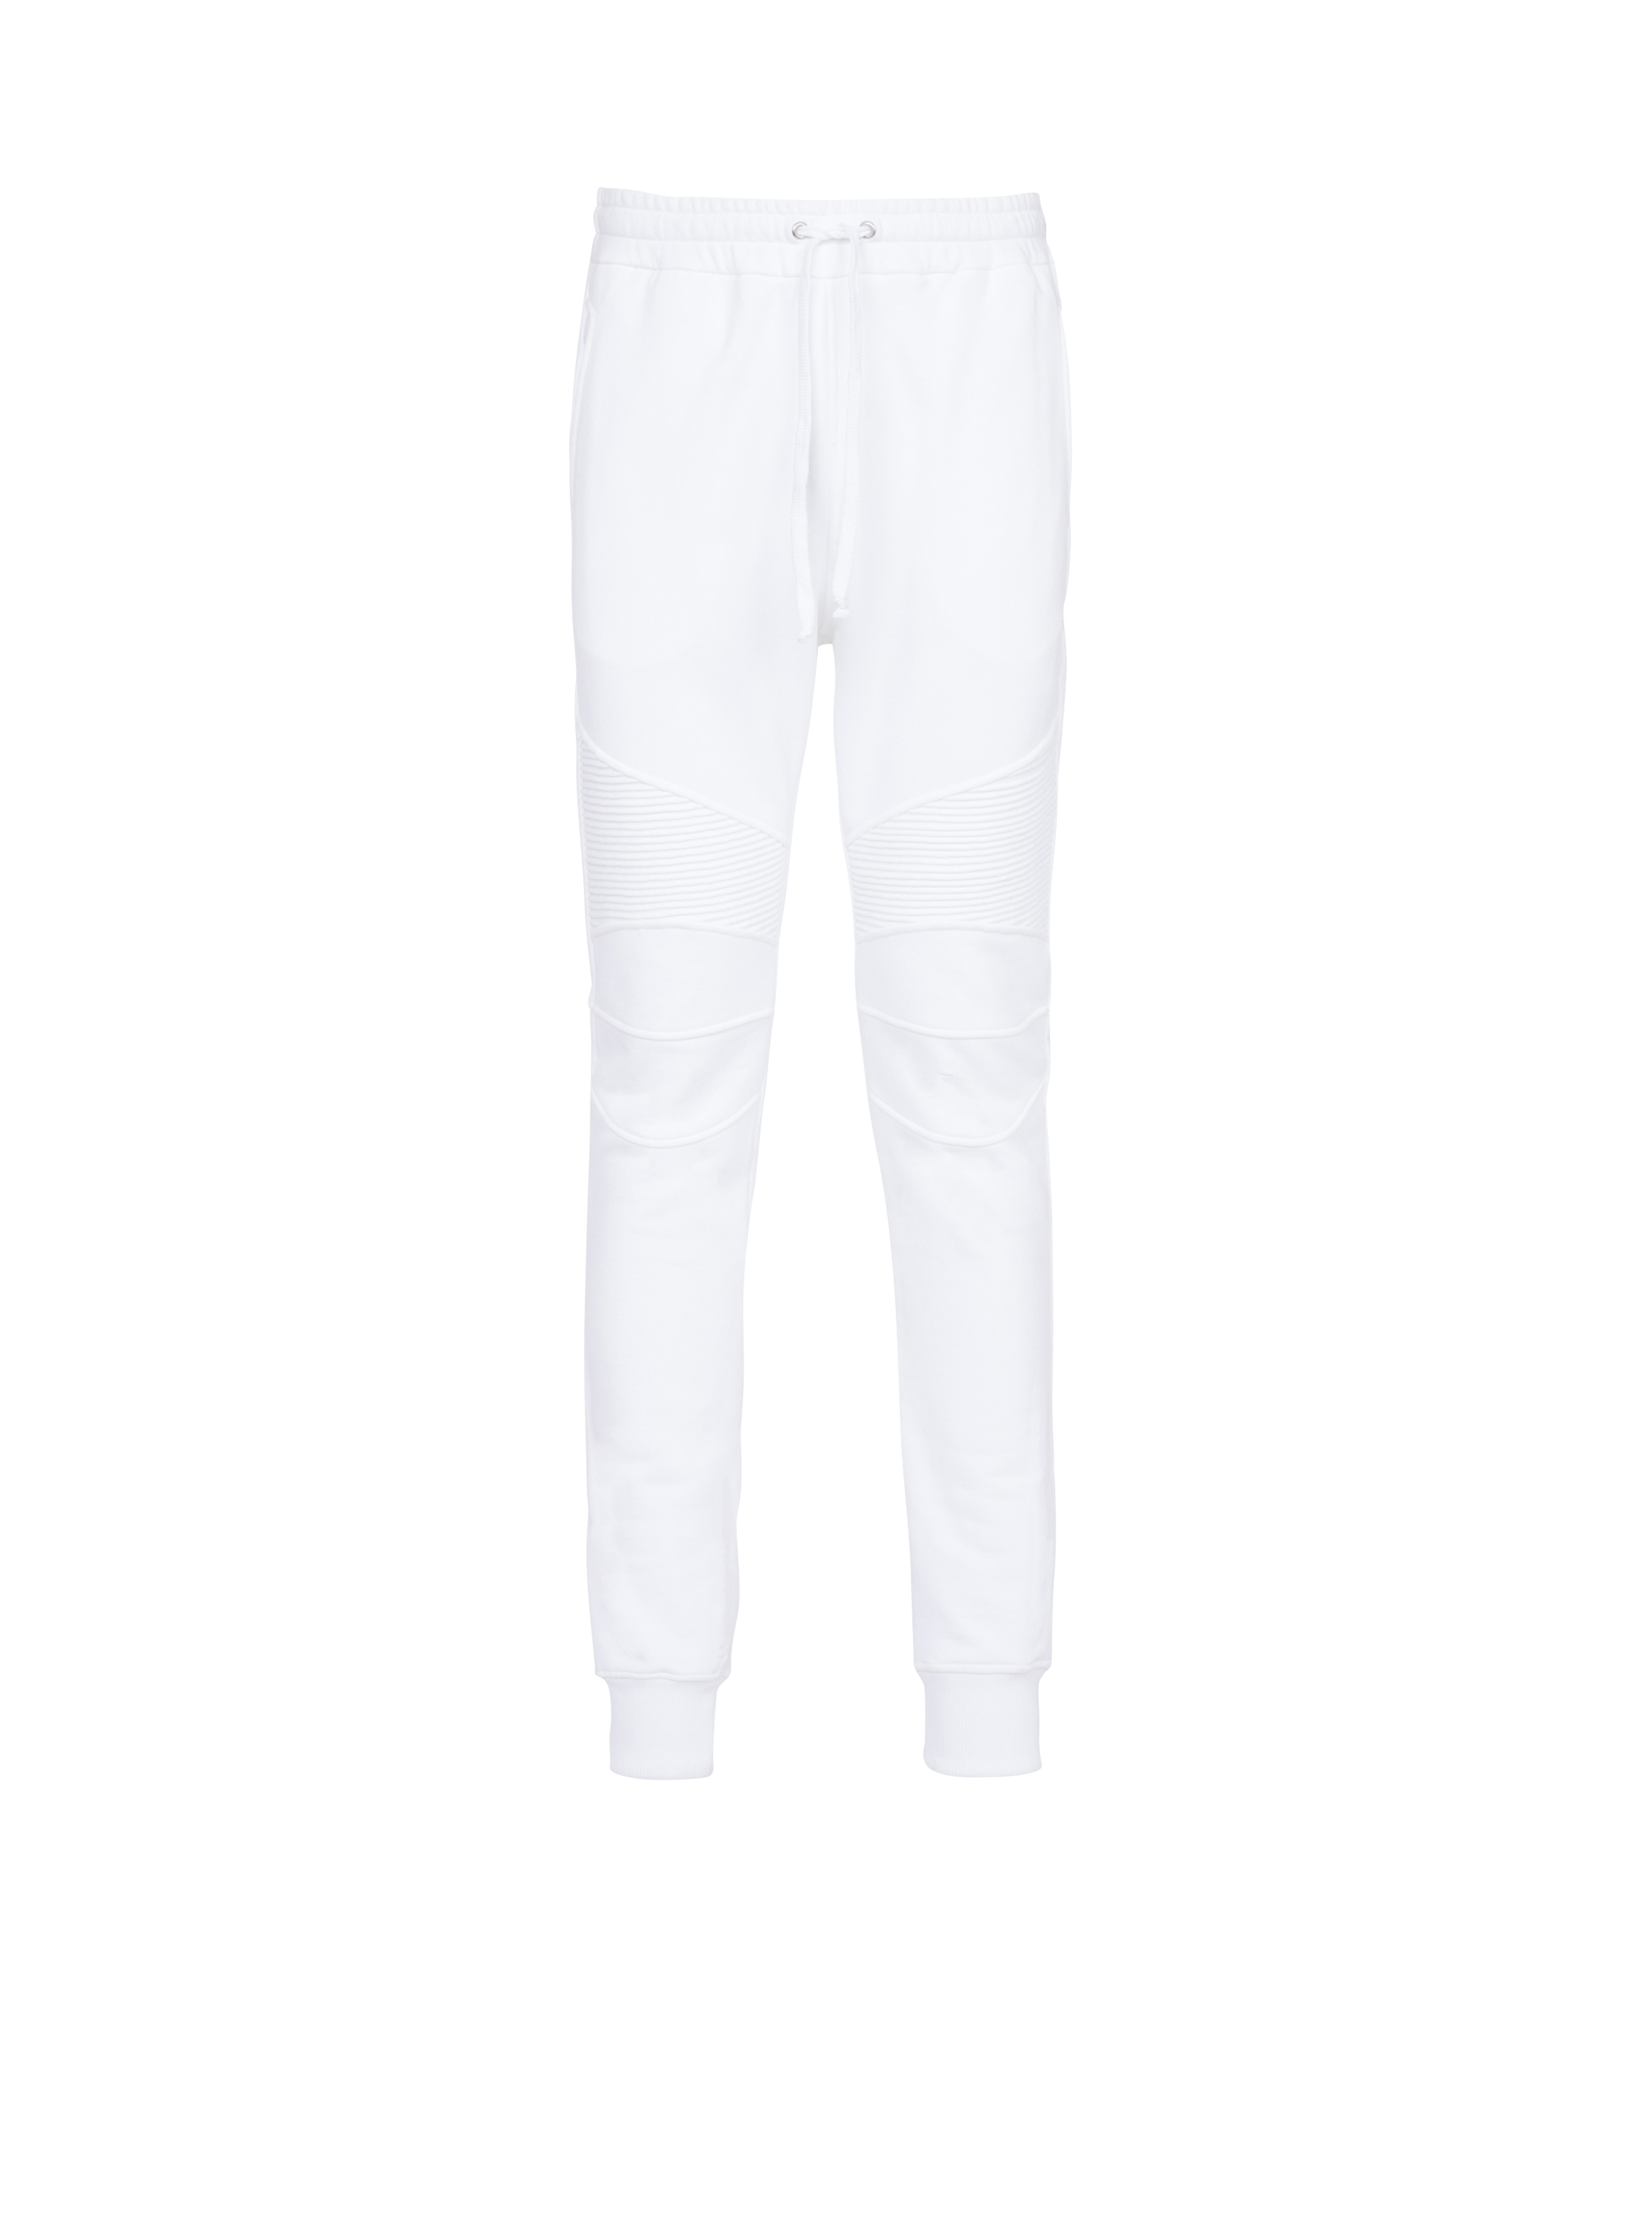 Pantalones de chándal de algodón con el logotipo flocado de Balmain Paris, blanco